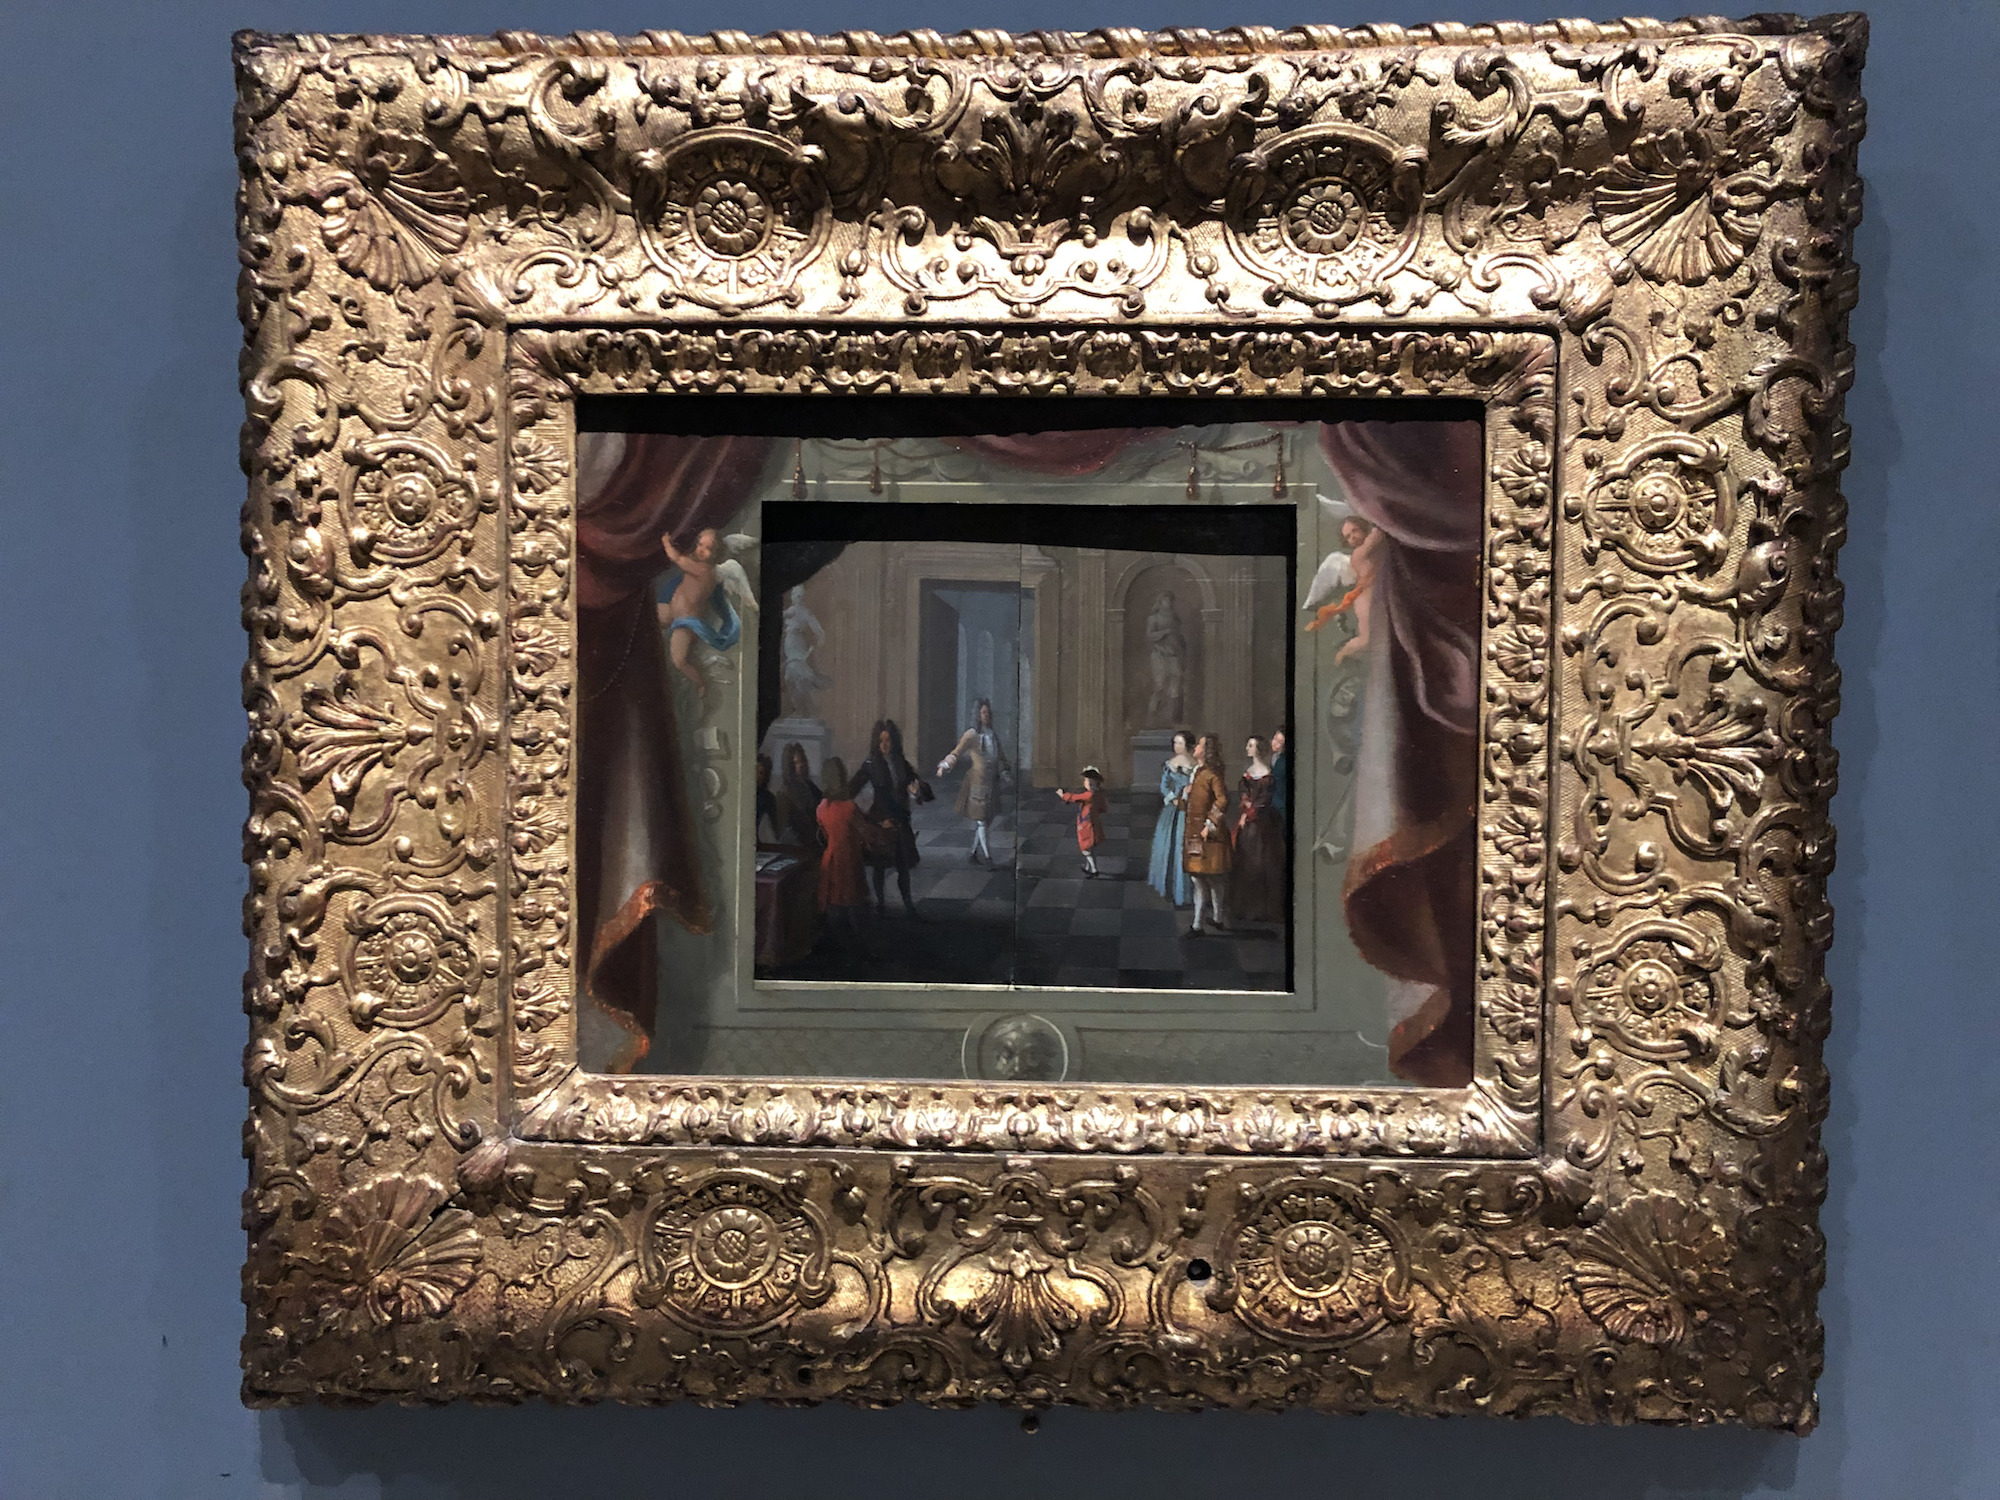 Attribué au père Sébastien (né Jean) Truchet (1657-1729), Tableau mécanique : L’Éducation de Louis XV (La Leçon de danse), Paris, vers 1720. Huiles sur cuivre, cadre en bois sculpté et doré, mécanisme horloger et tringles, 58,7 x 67,5 cm (avec cadre). Collection particulière © OPM